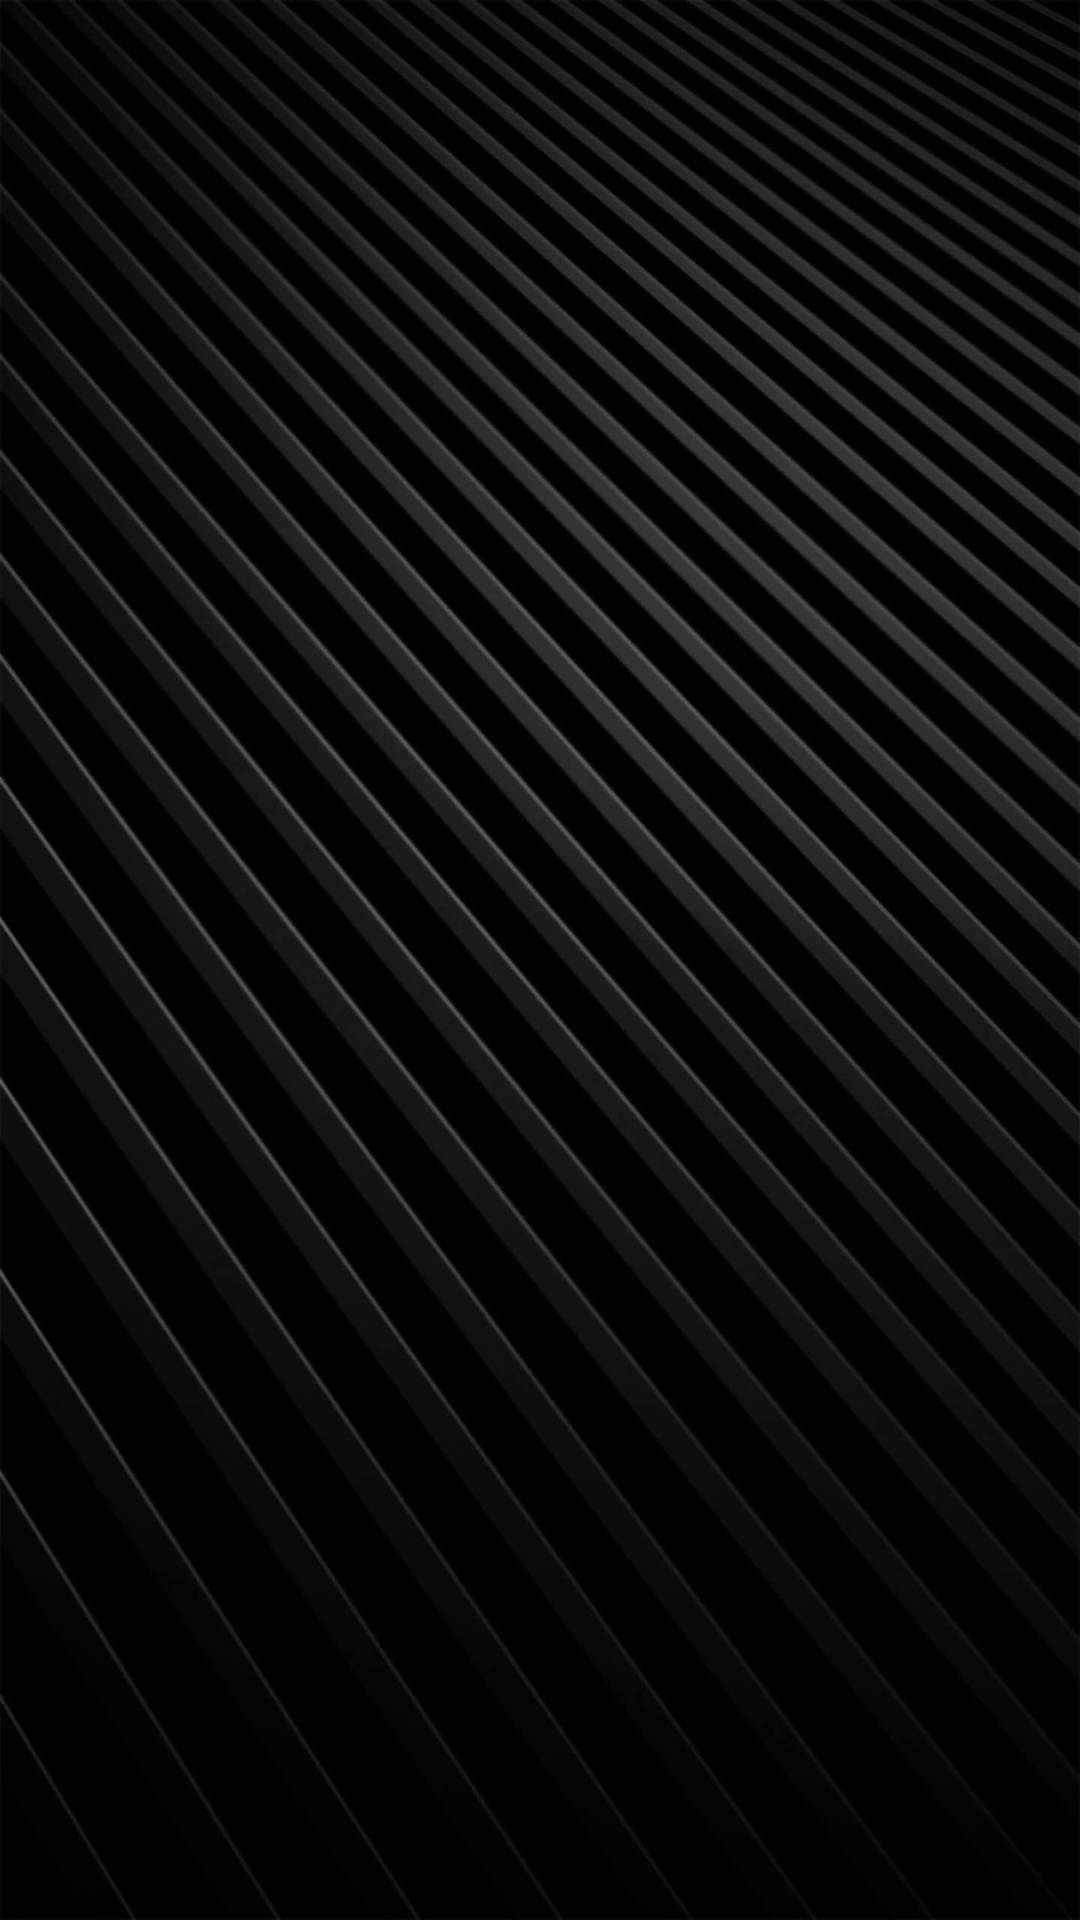 Líneasdiagonales Negras Y Grises Para Iphone. Fondo de pantalla